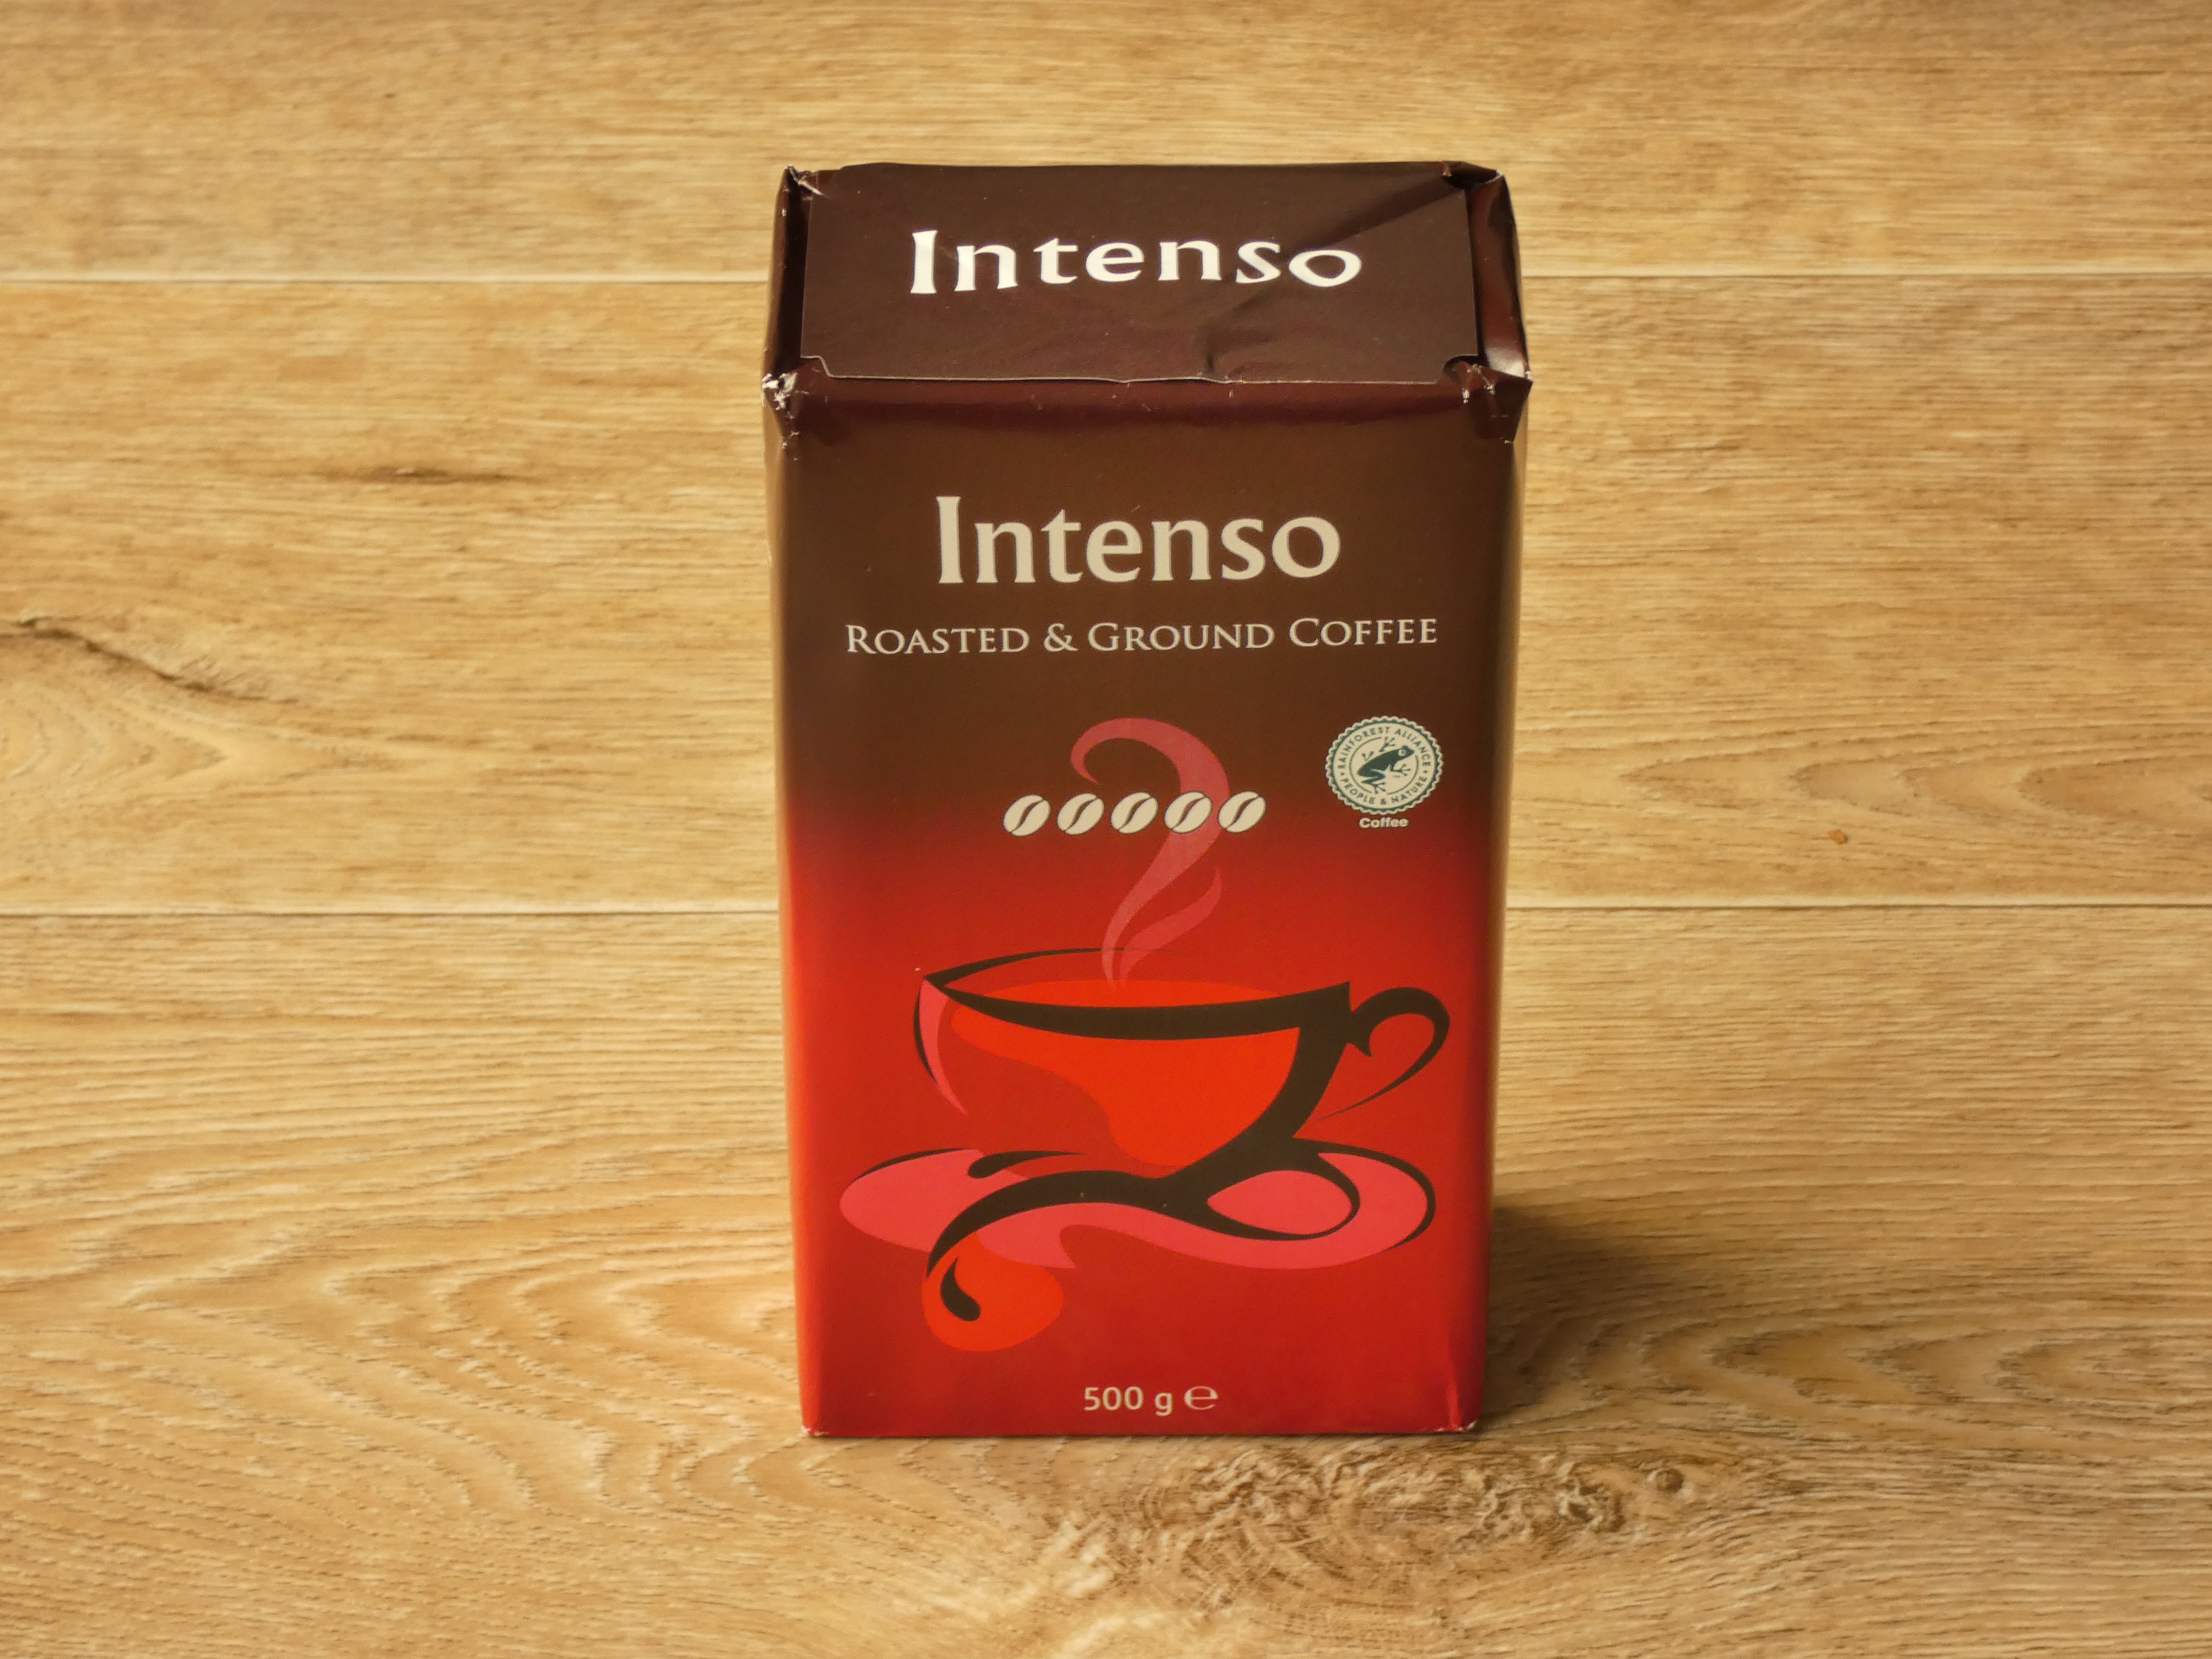 Dieses große Bild zeigt den Intenso Kaffee von Lidl. Es ist eine Vorderansicht der Verpackung. Die Verpackung ist oben braun und unten rot. Sie hat ‚Roasted & Ground Coffee‘ und ‚Intenso‘ im weißen Großbuchstaben und eine künstlerische Skizze von einer Kaffeetasse. Die Verpackung macht einen modernen und einfachen Eindruck.